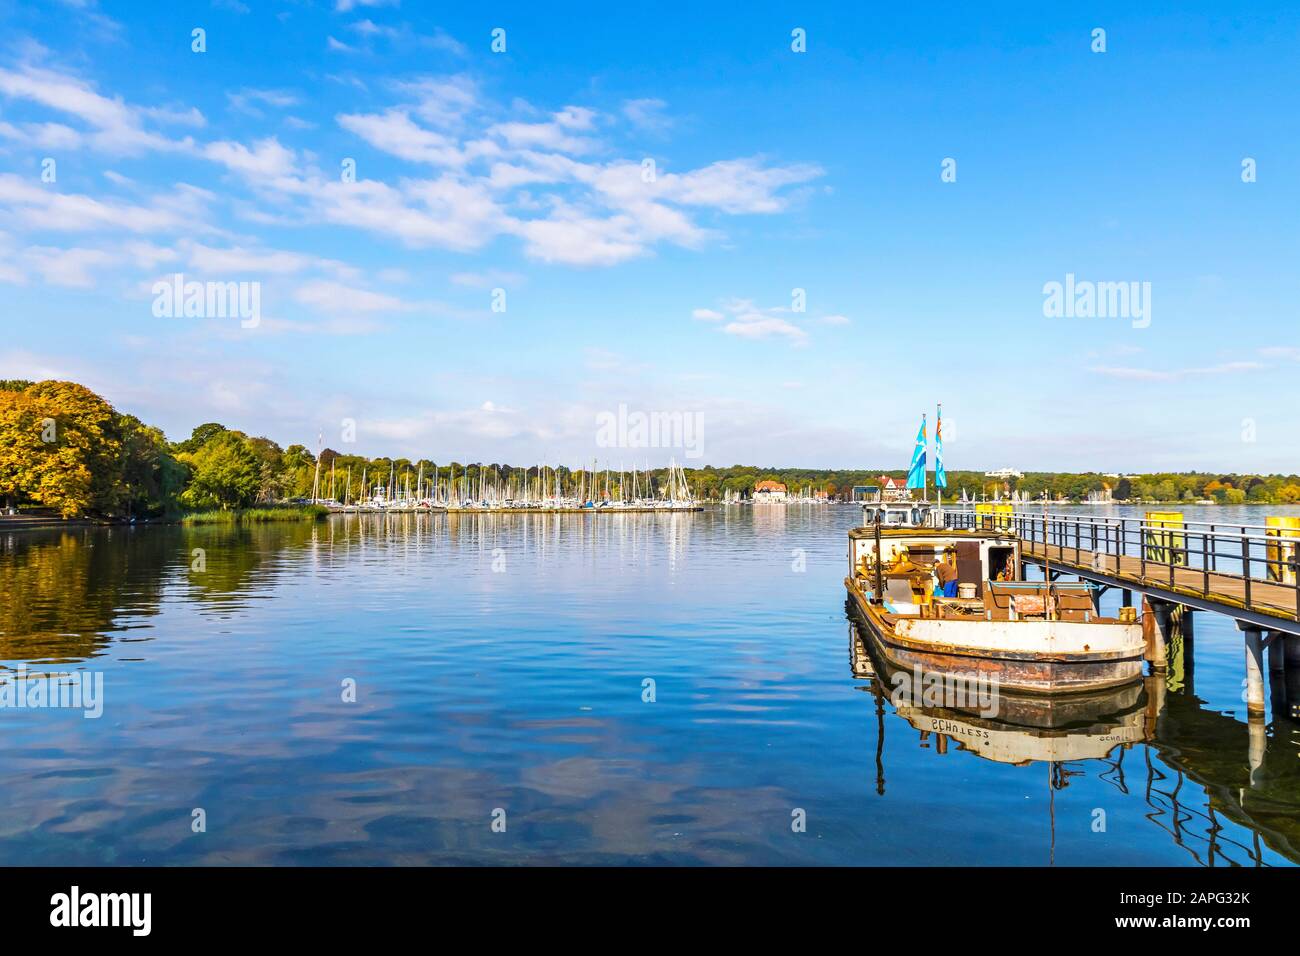 Moli per barche sul lago Wannsee a Berlino, Germania. Wannsee (o Grosser Wannsee) è un'insenatura del fiume Havel vicino alla località di Wannsee e Nikolassee Foto Stock